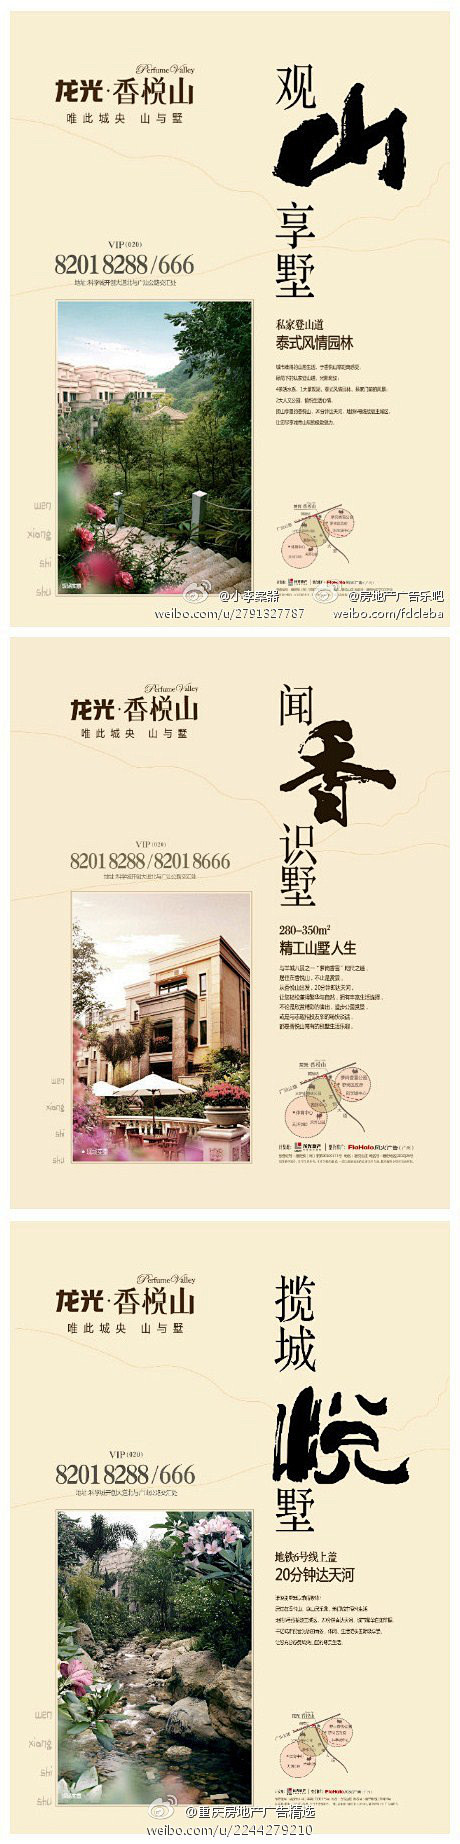 重庆房地产广告精选的照片 - 微相册 -...